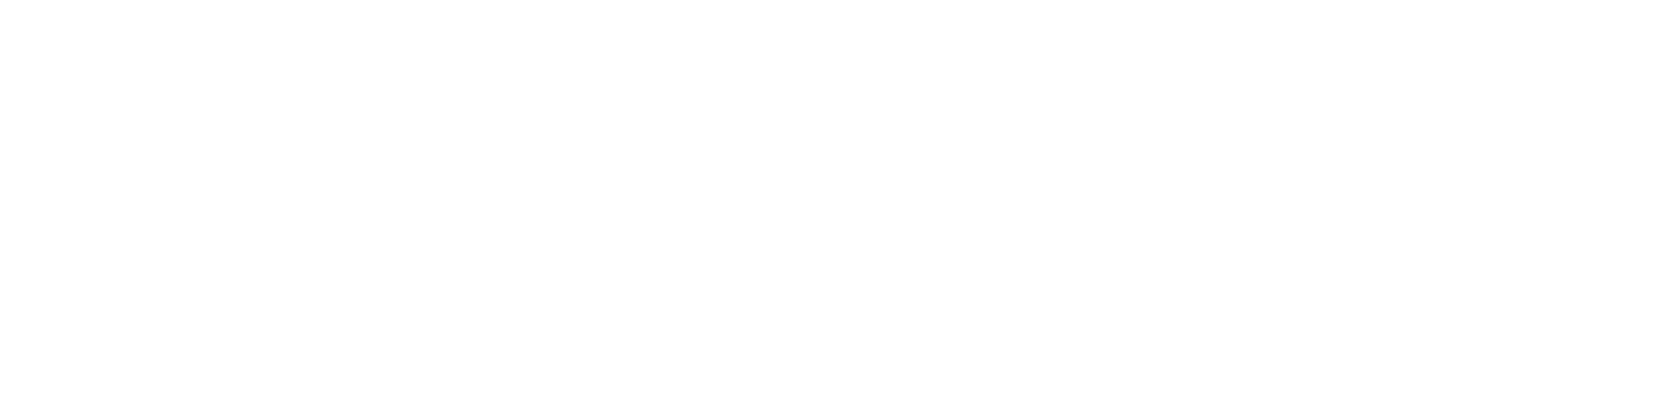 LandVac Logo White